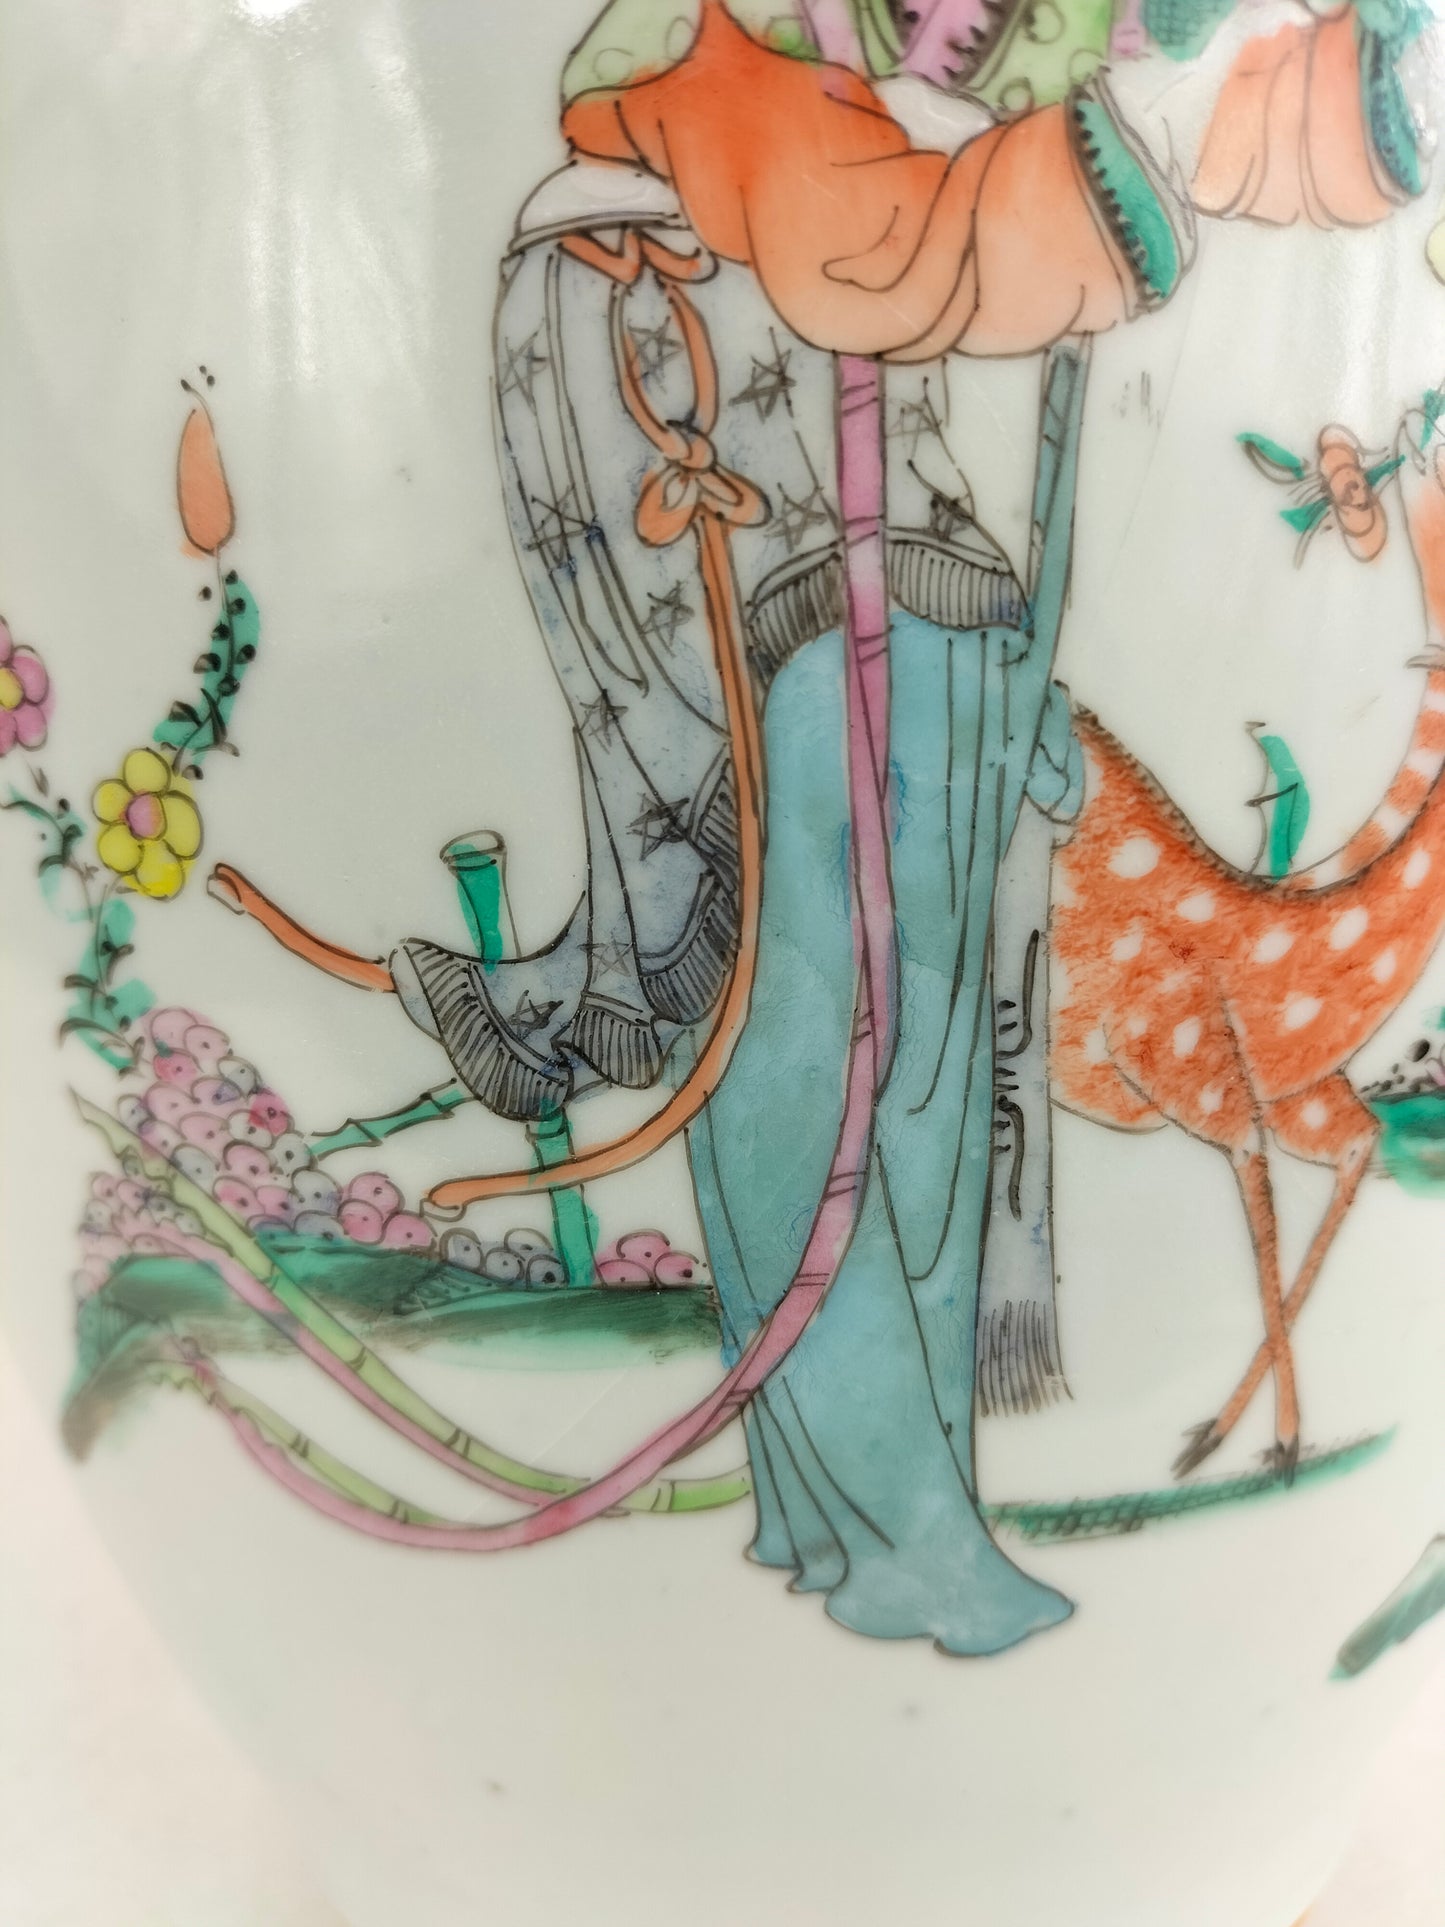 装饰有花园场景的古董中国花瓶 // 民国时期（1912-1949）